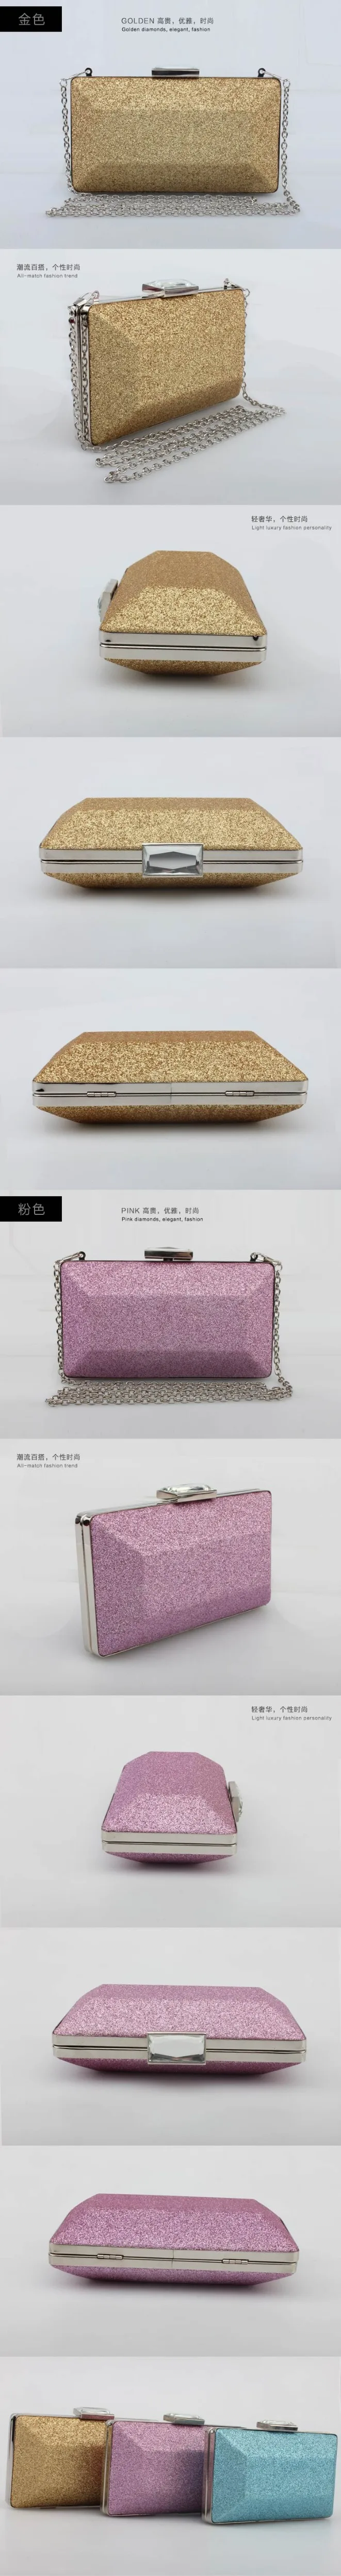 Bolsa feminina роскошные сумки женские дизайнерские сумки через плечо сумка Бутик Кошелек Вечерняя Сумка клатчи пудра блестящая коробка